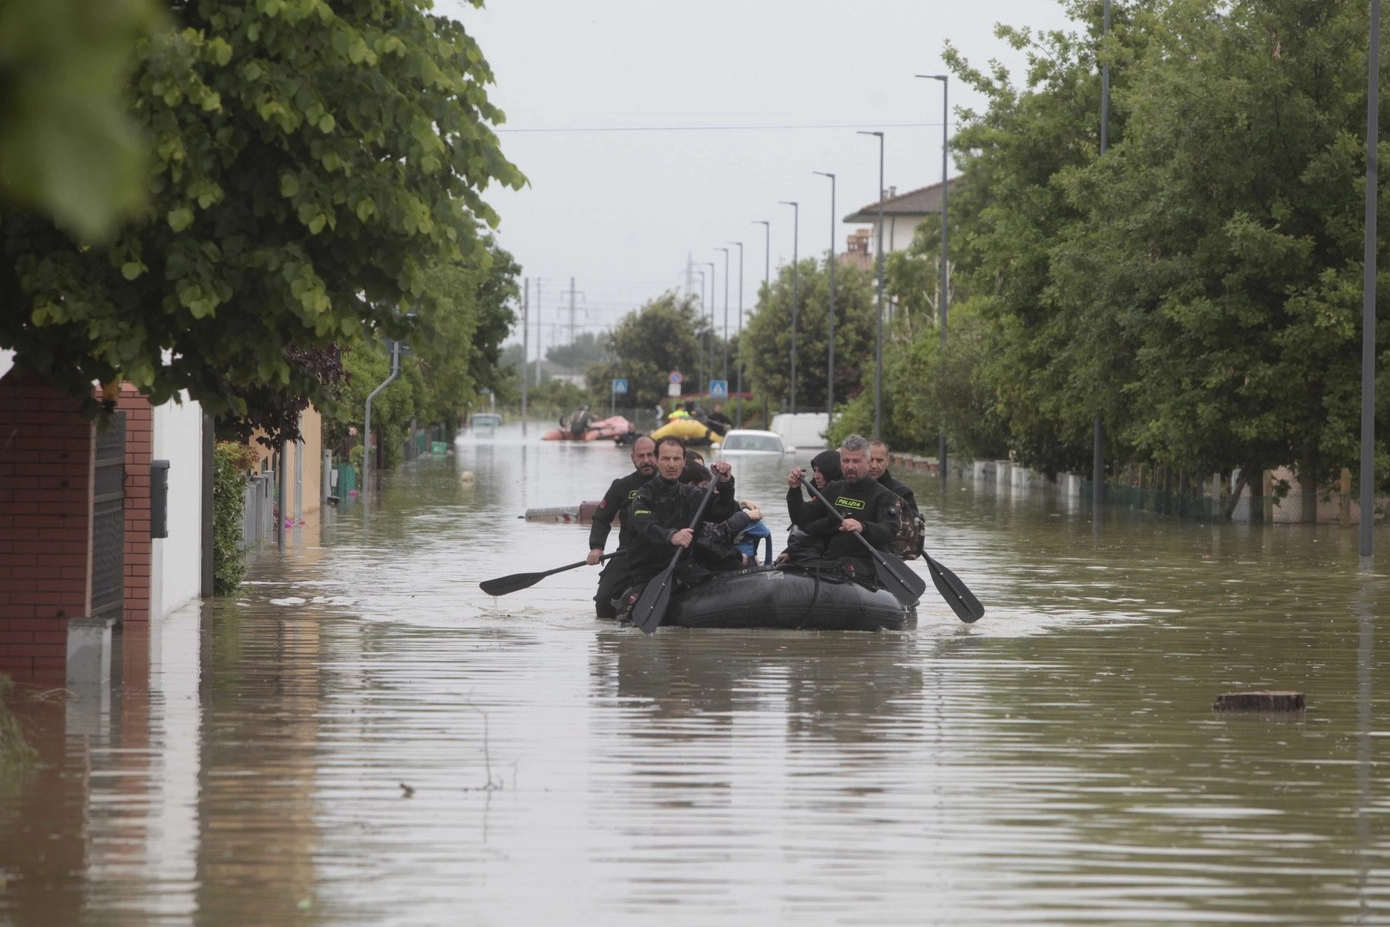 Alluvione, al momento i fondi raccolti da donazioni di privati superano i fondi pubblici erogati